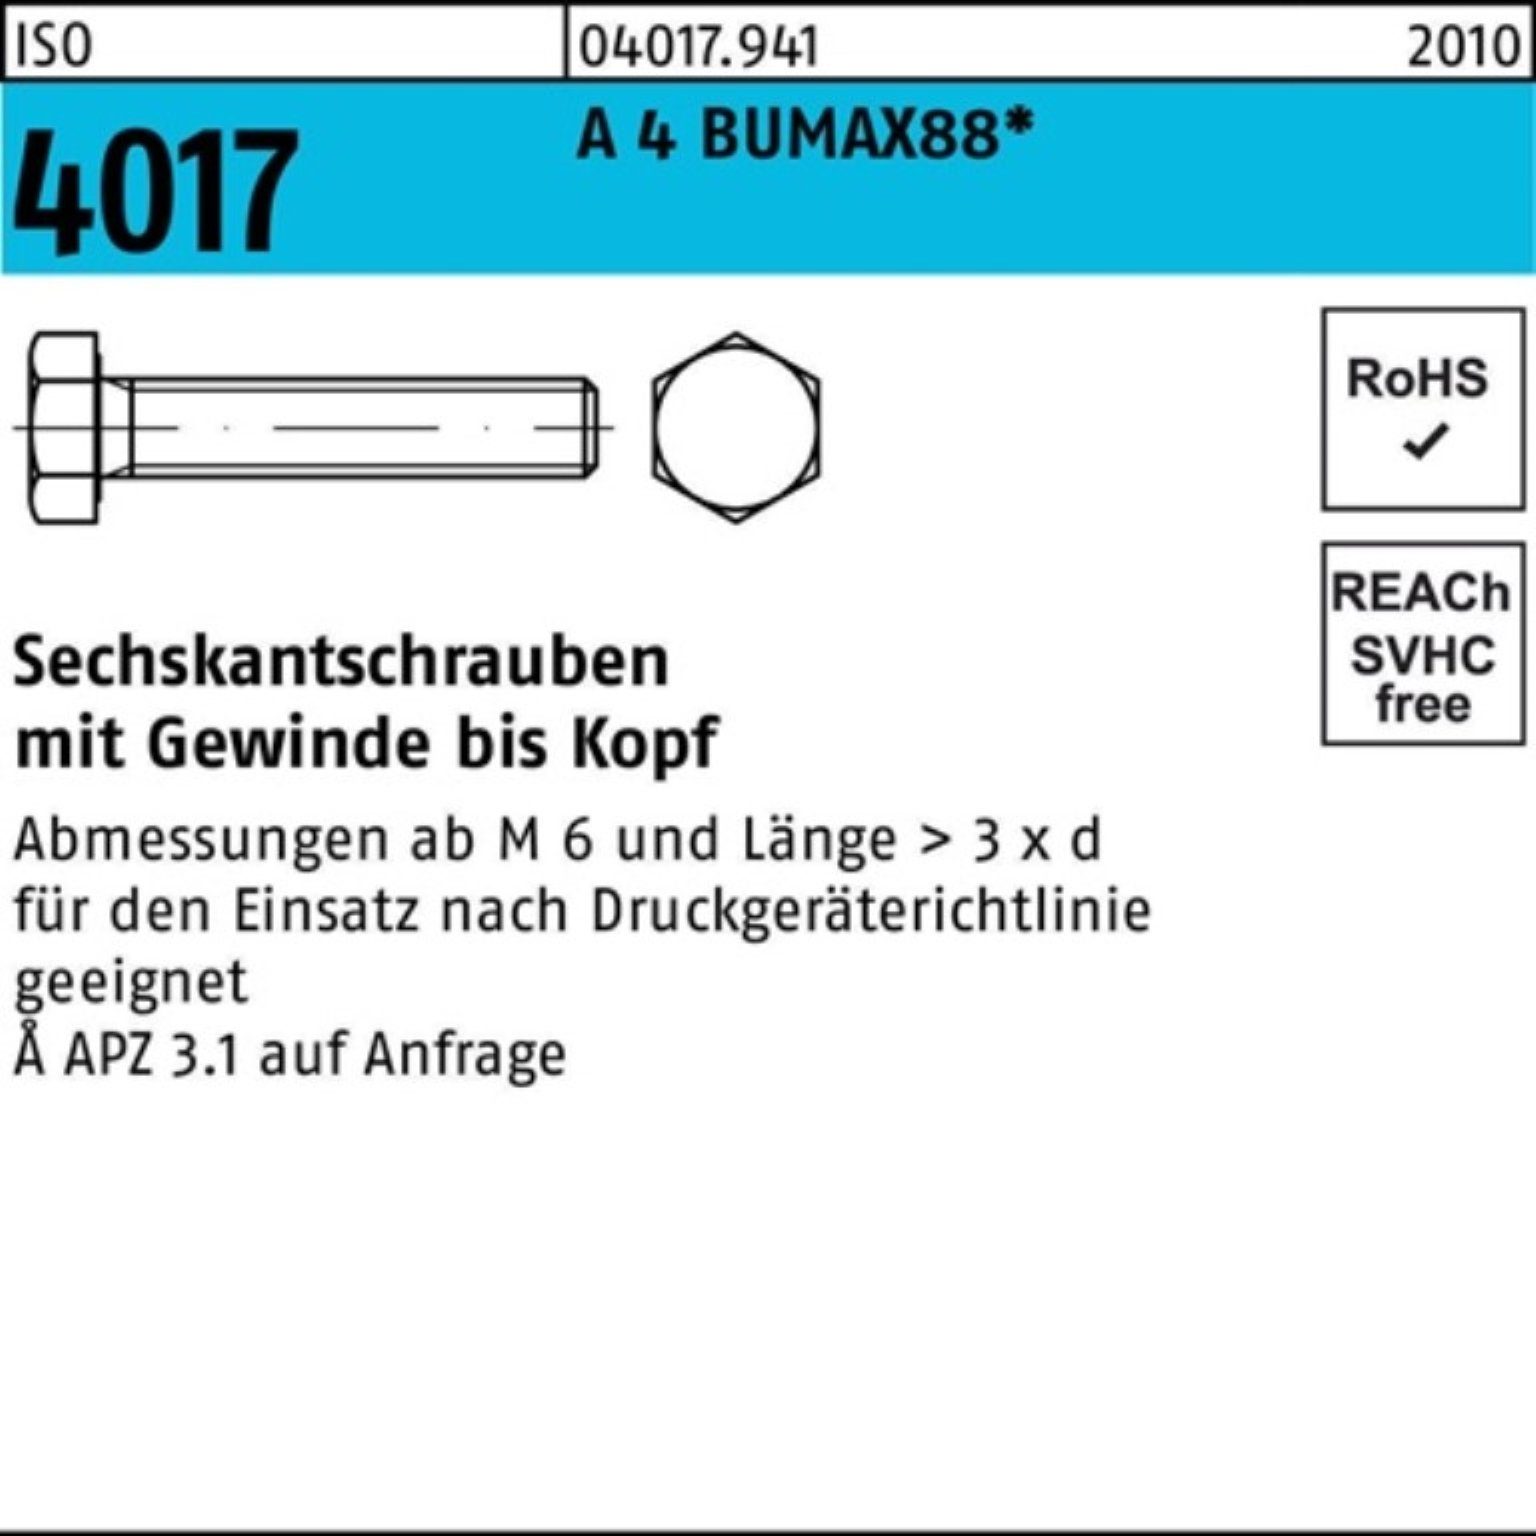 Bufab Sechskantschraube 100er Pack Sechskantschraube ISO 4017 VG M8x 25 A 4 BUMAX88 50 Stück